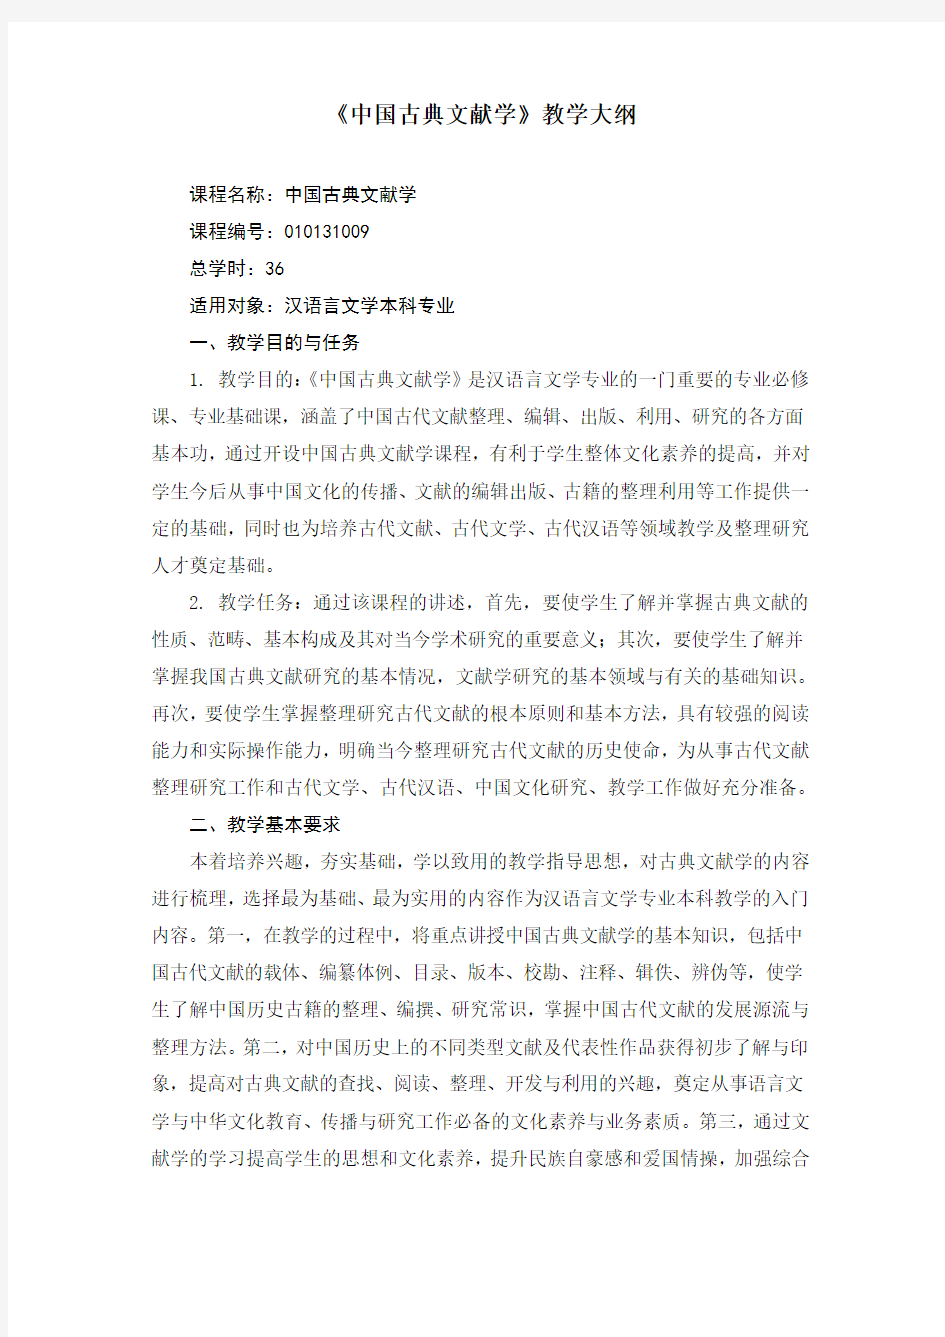 汉语言文学专业中国古典文献学教学大纲